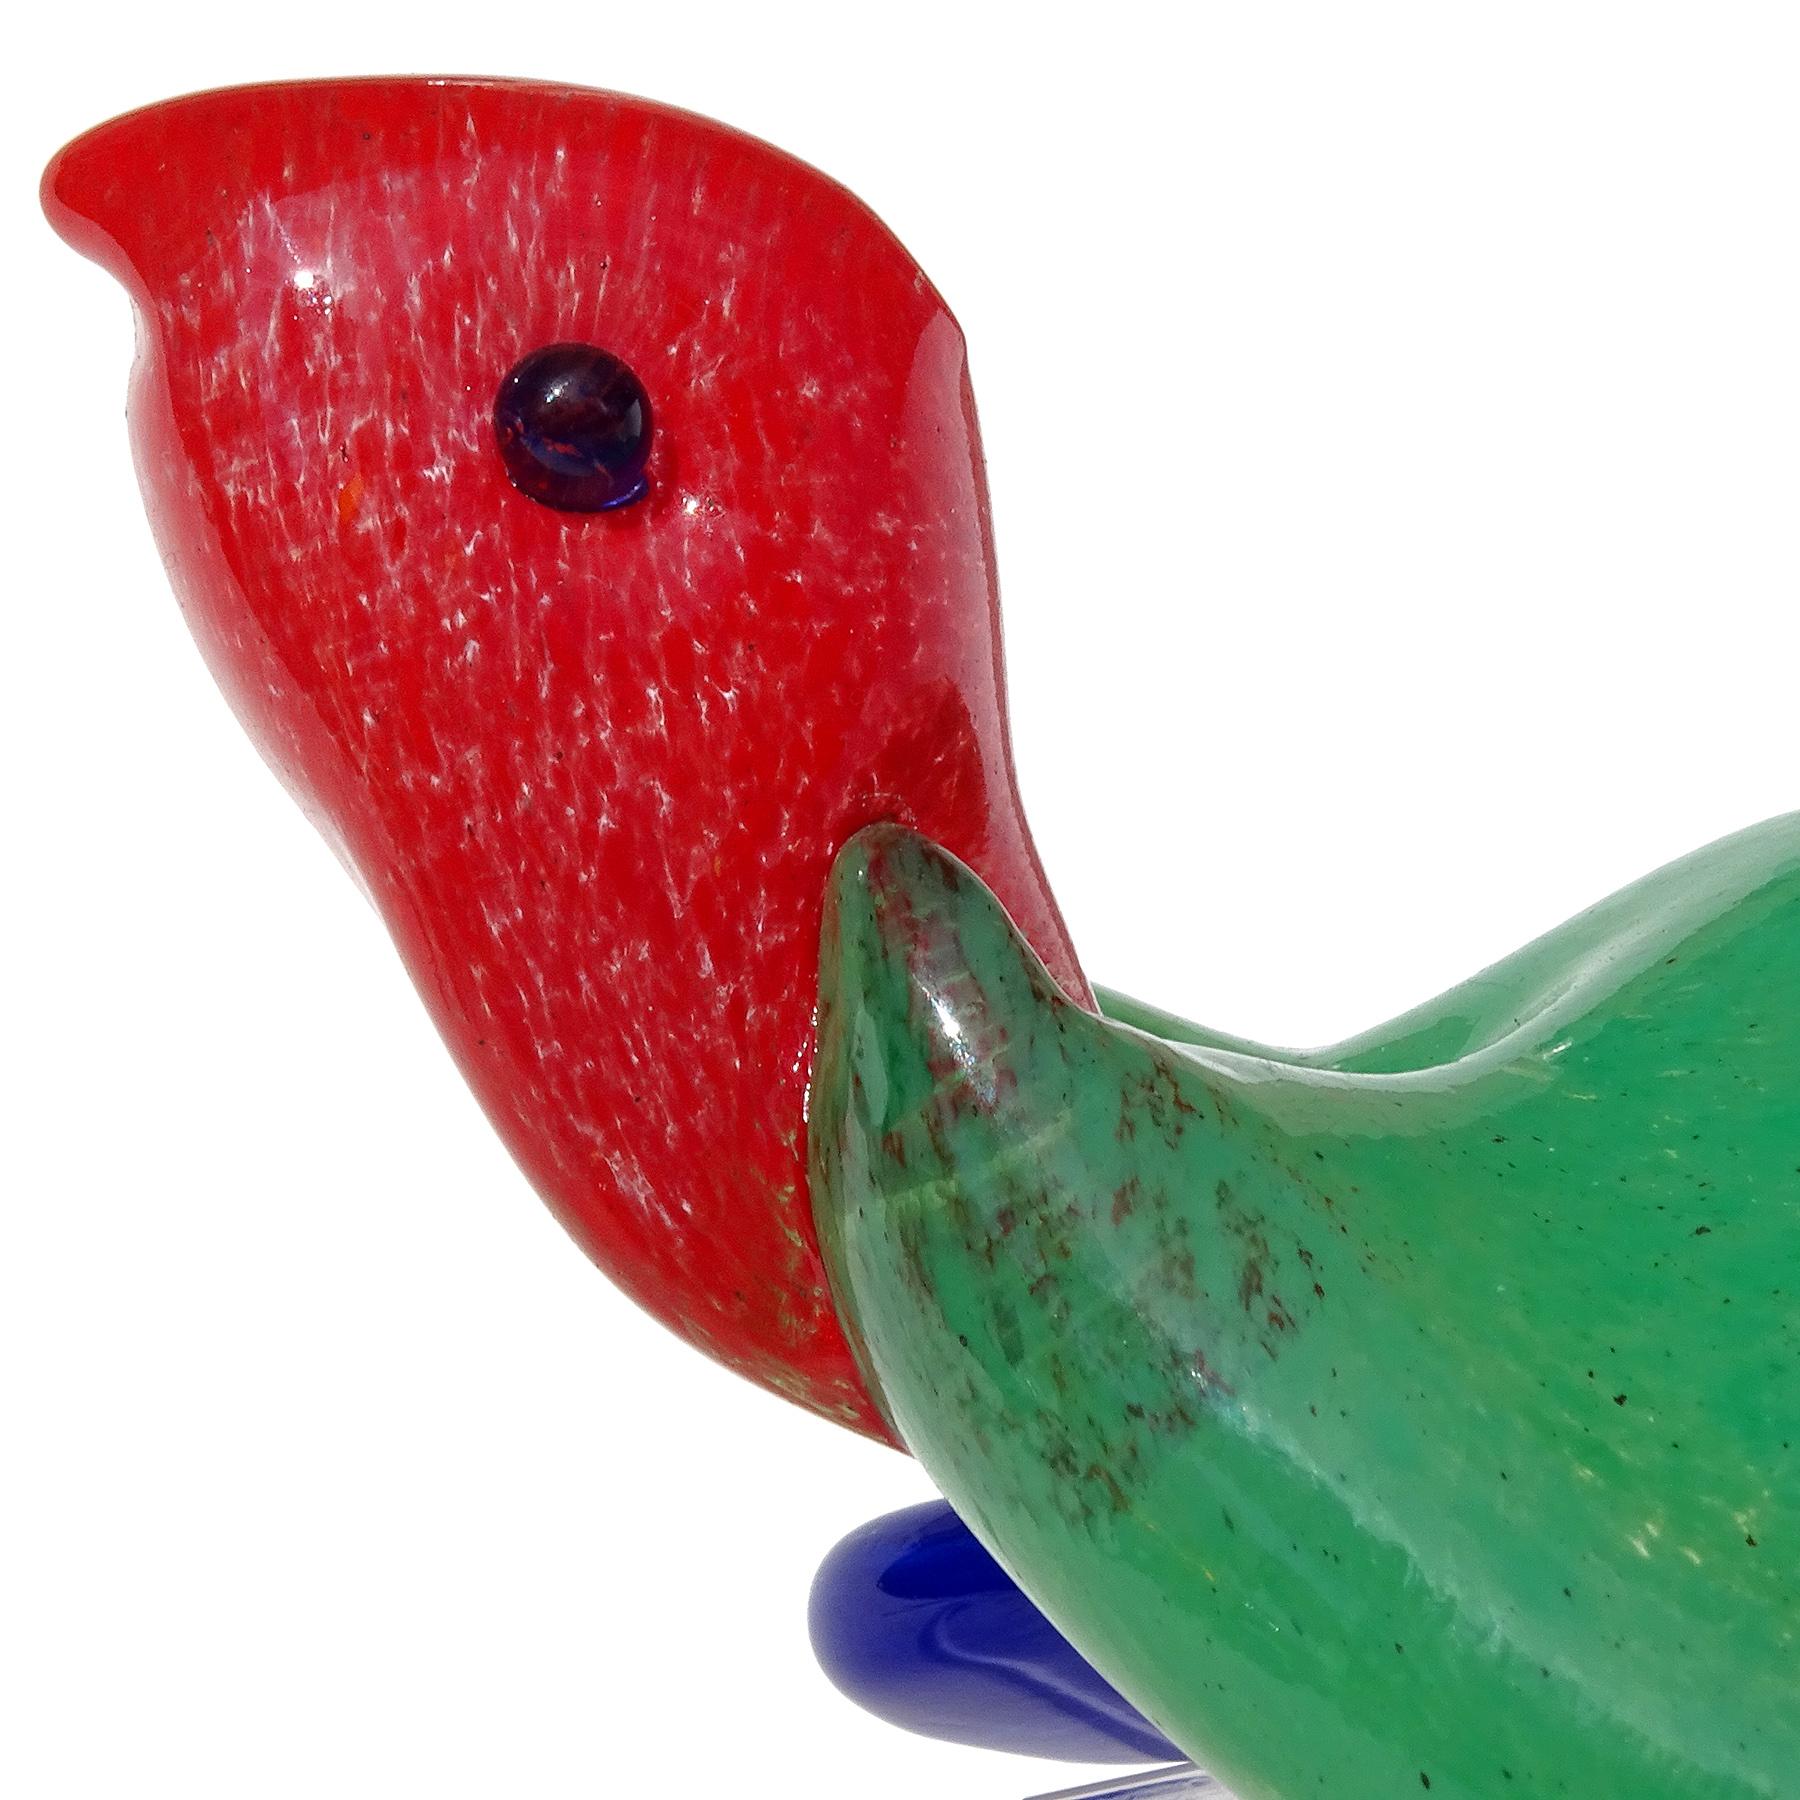 Magnifique figurine / sculpture de tortue de mer en verre d'art italien vintage de Murano, vert, rouge et bleu. La pièce est documentée comme provenant de la société Gambaro & Poggi, avec un original 